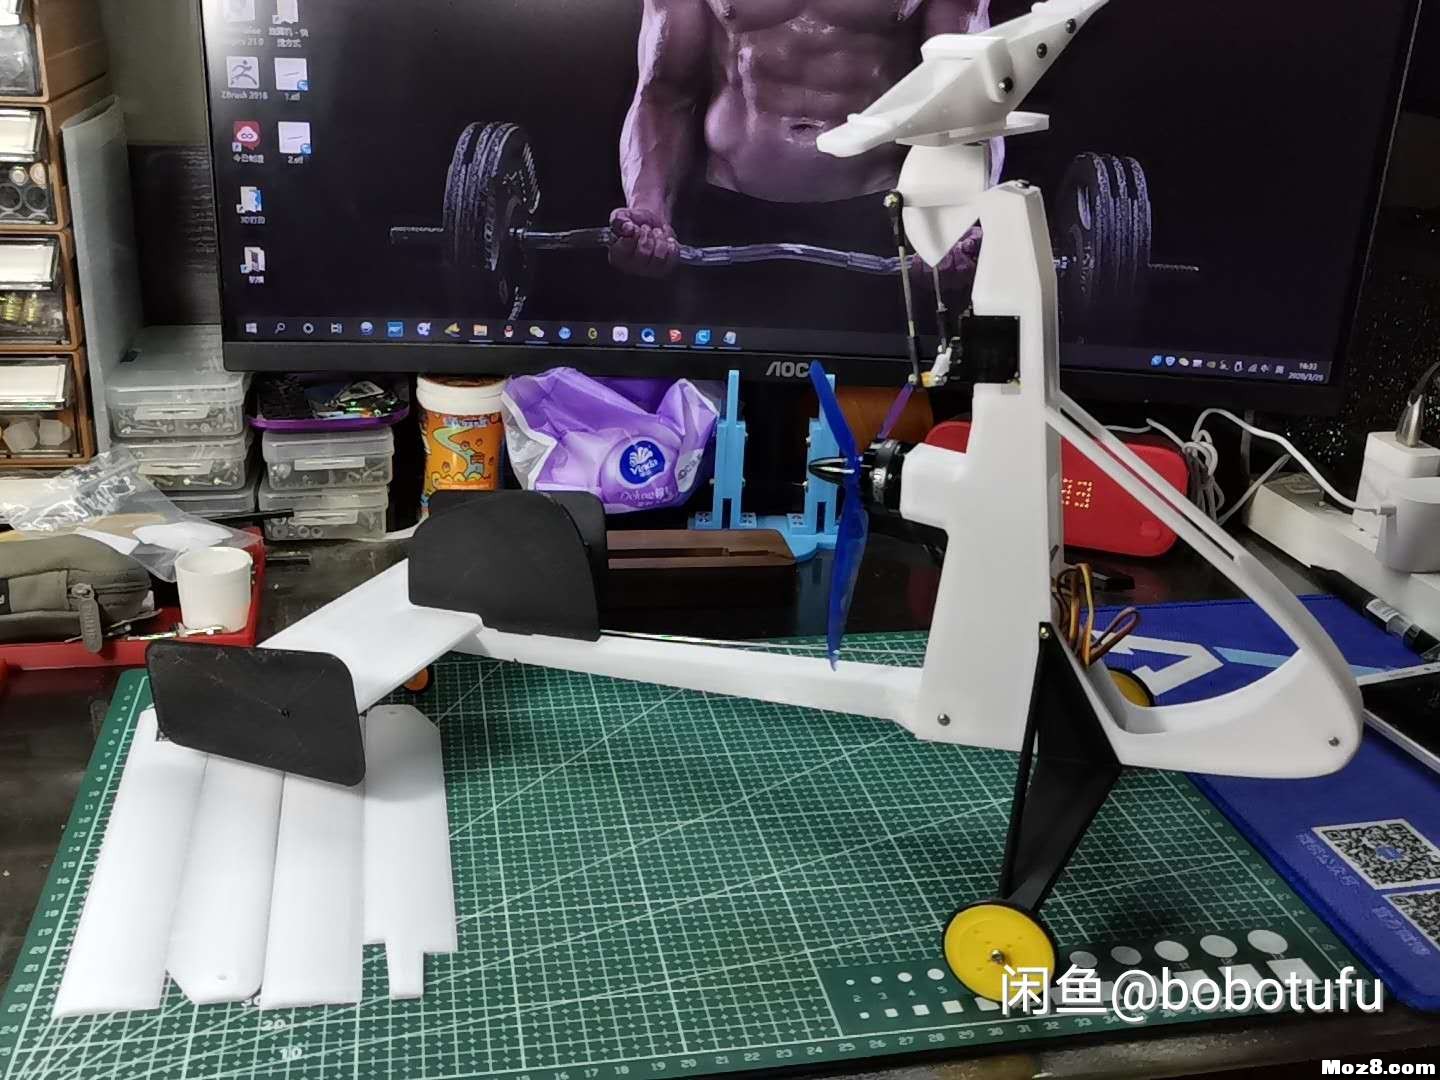 3D打印遥控旋翼机 电池,舵机,飞控,电调,电机 作者:bobotufu 5761 